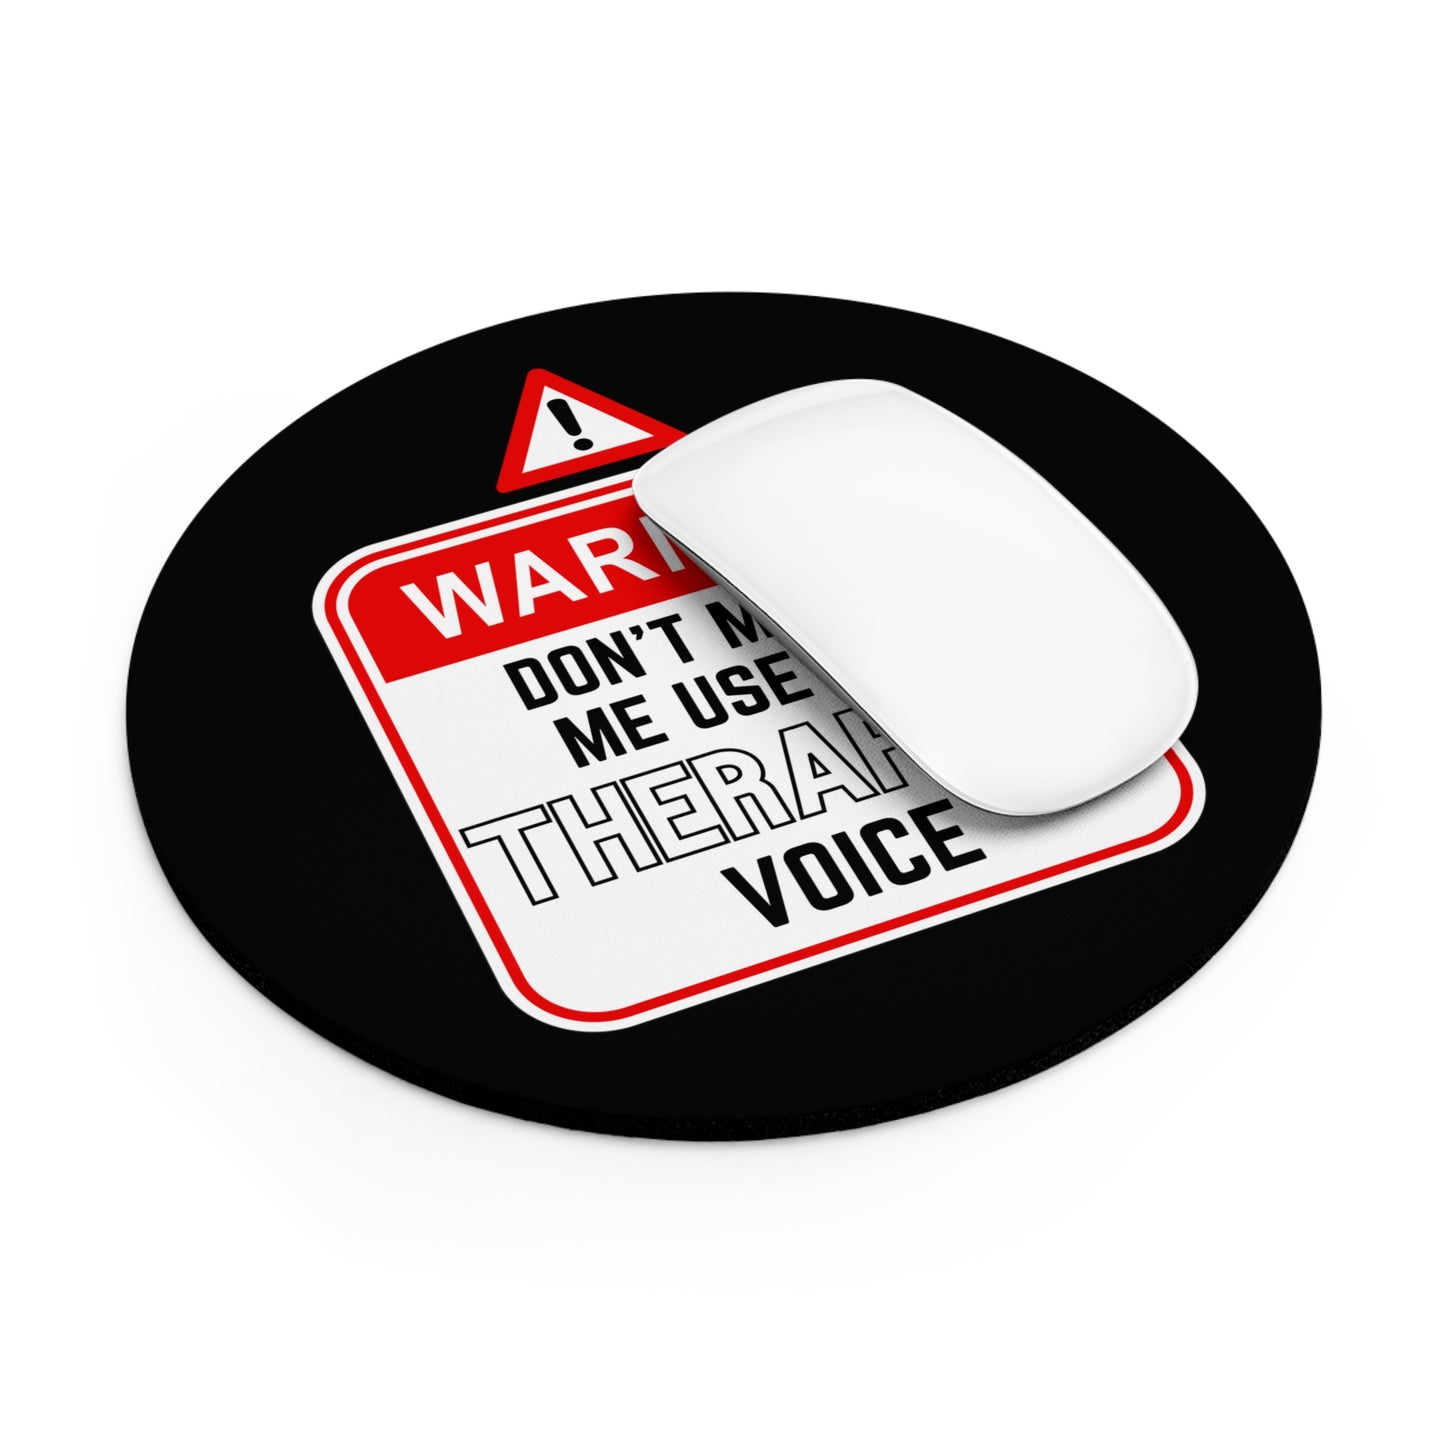 "Warning - Therapist Voice" Mousepad